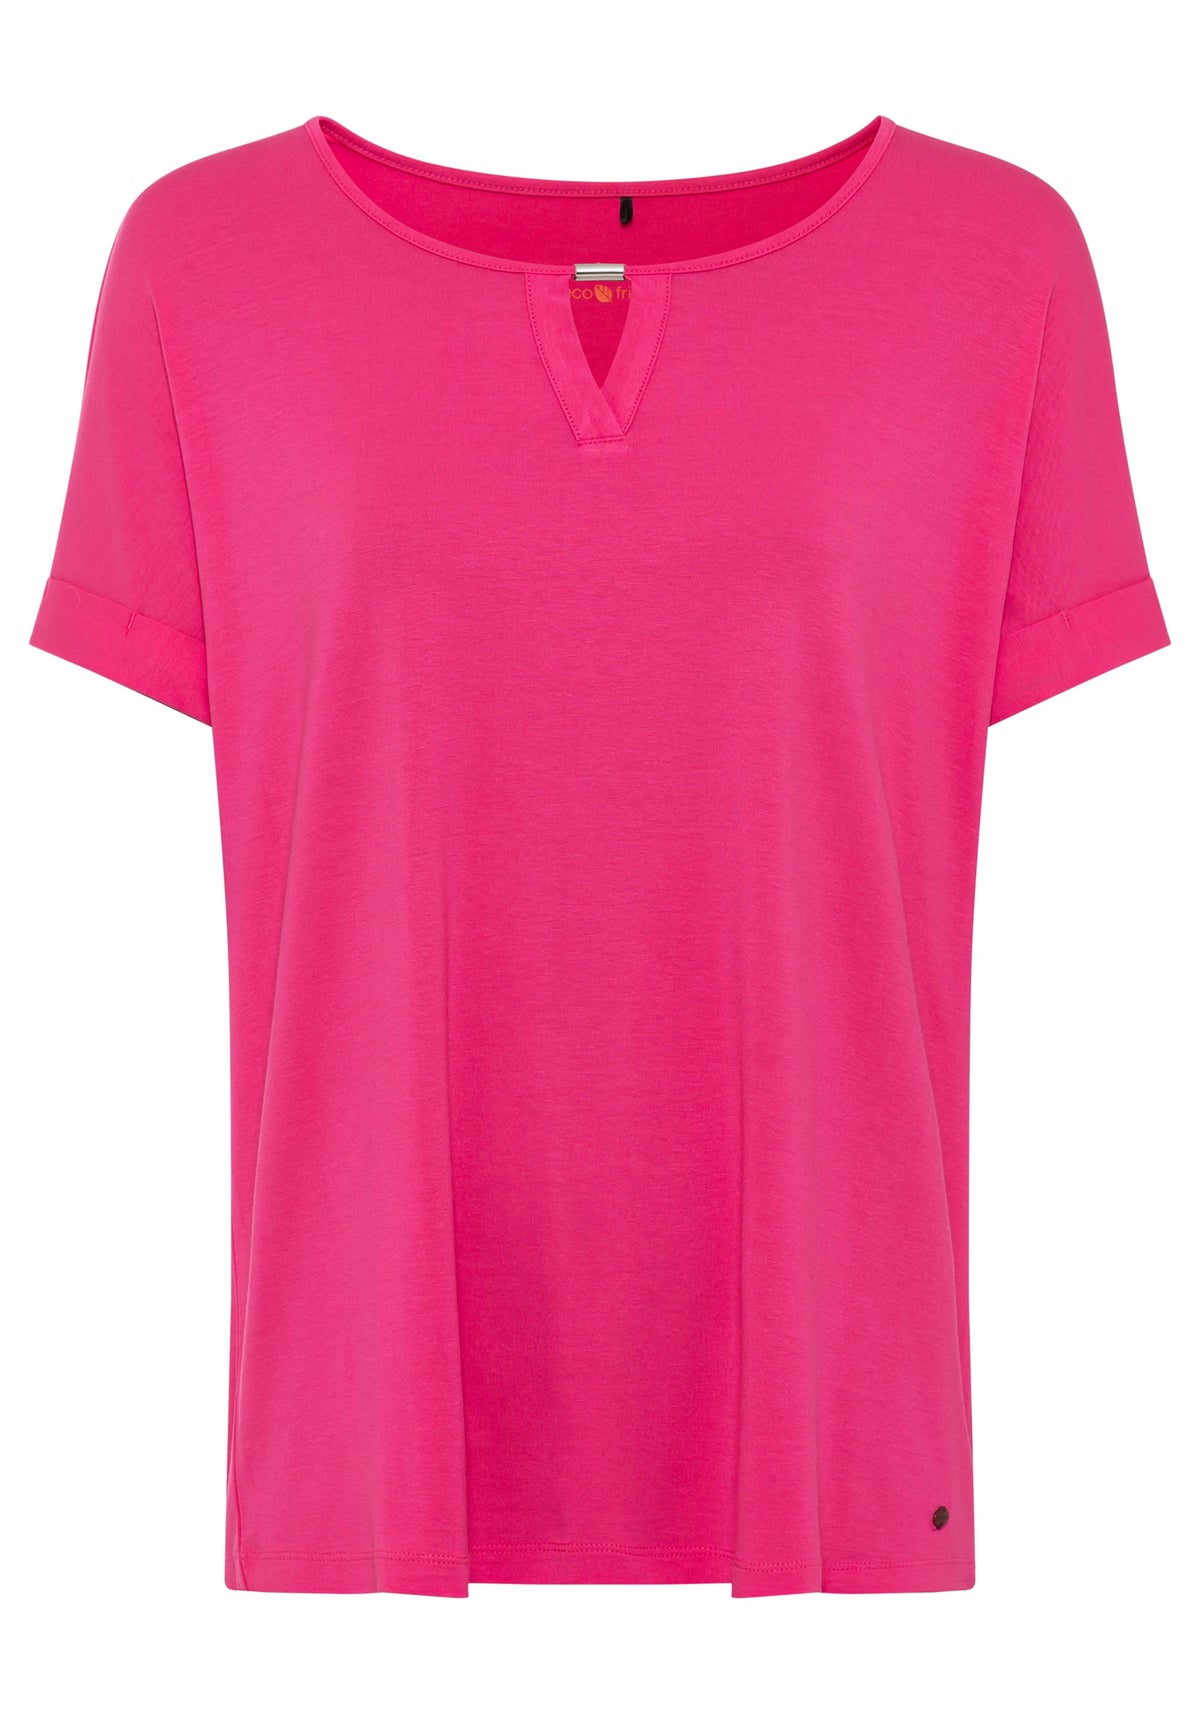 Short Sleeve Keyhole Neck T-Shirt containing LENZING™ ECOVERO™ Viscose